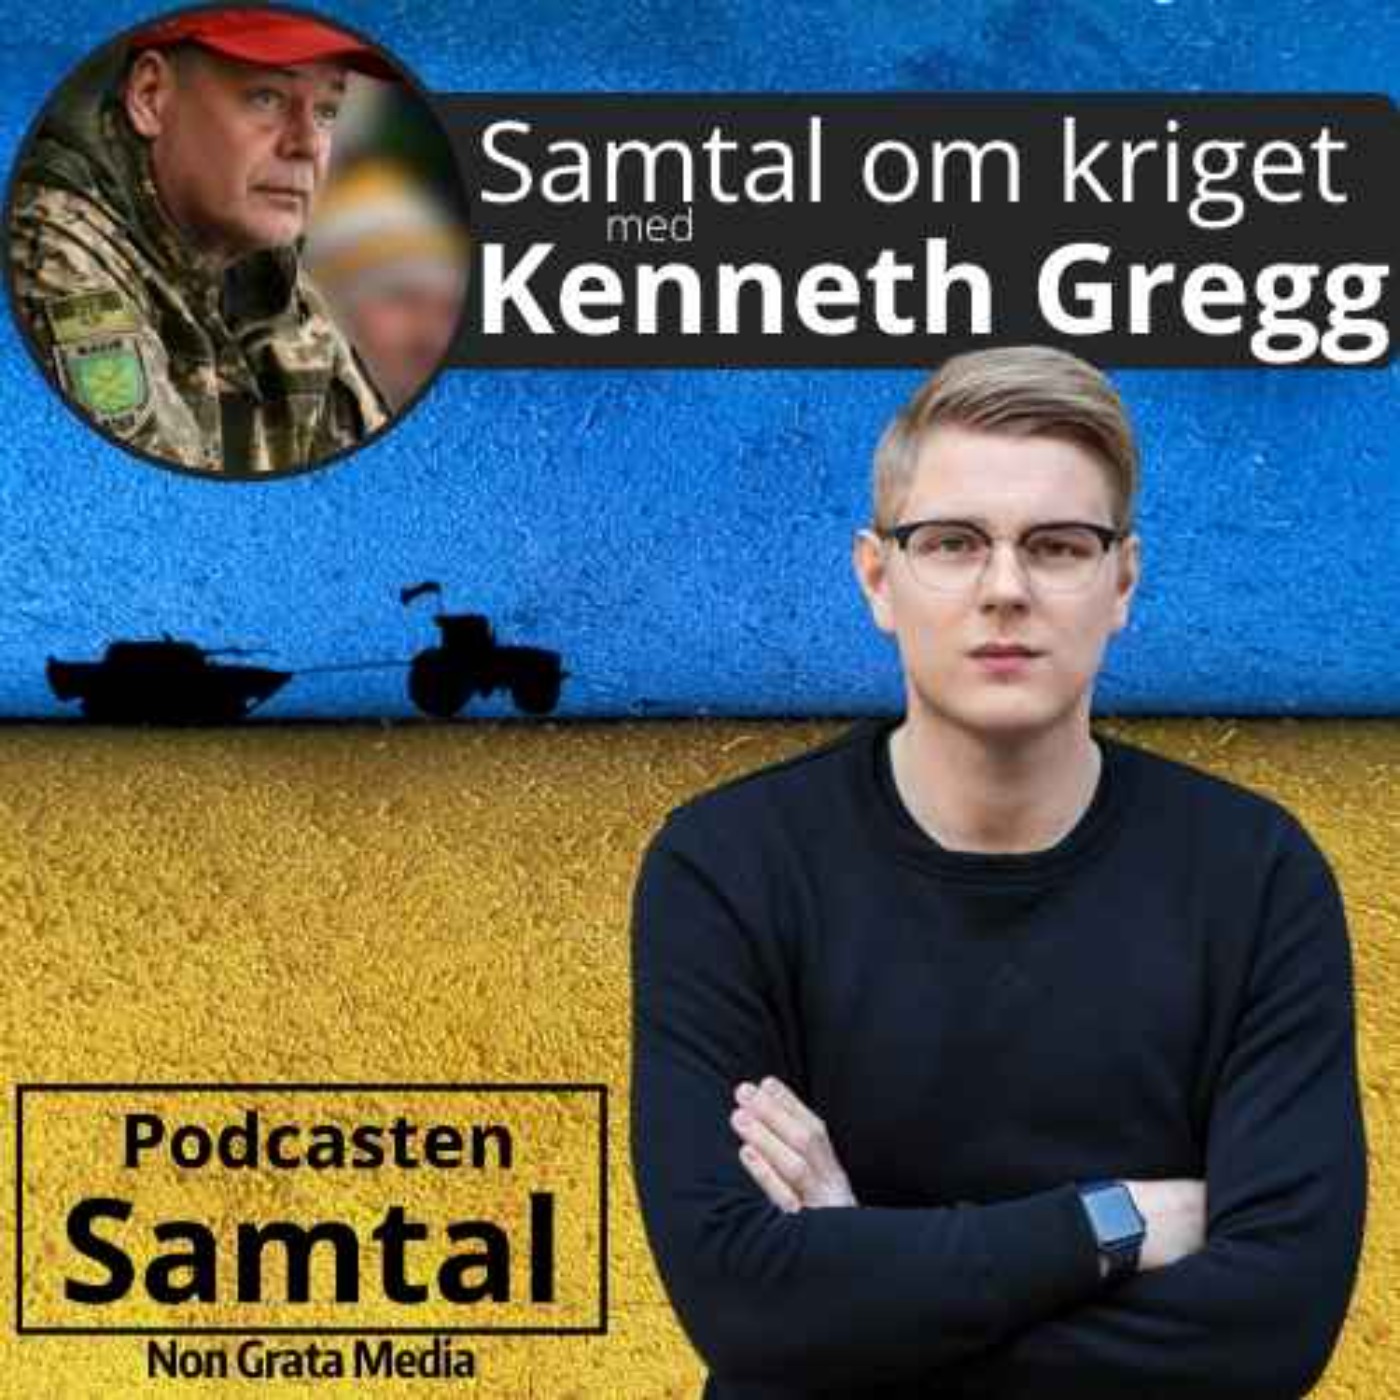 Samtal om kriget, med Kenneth Gregg (vecka 23)